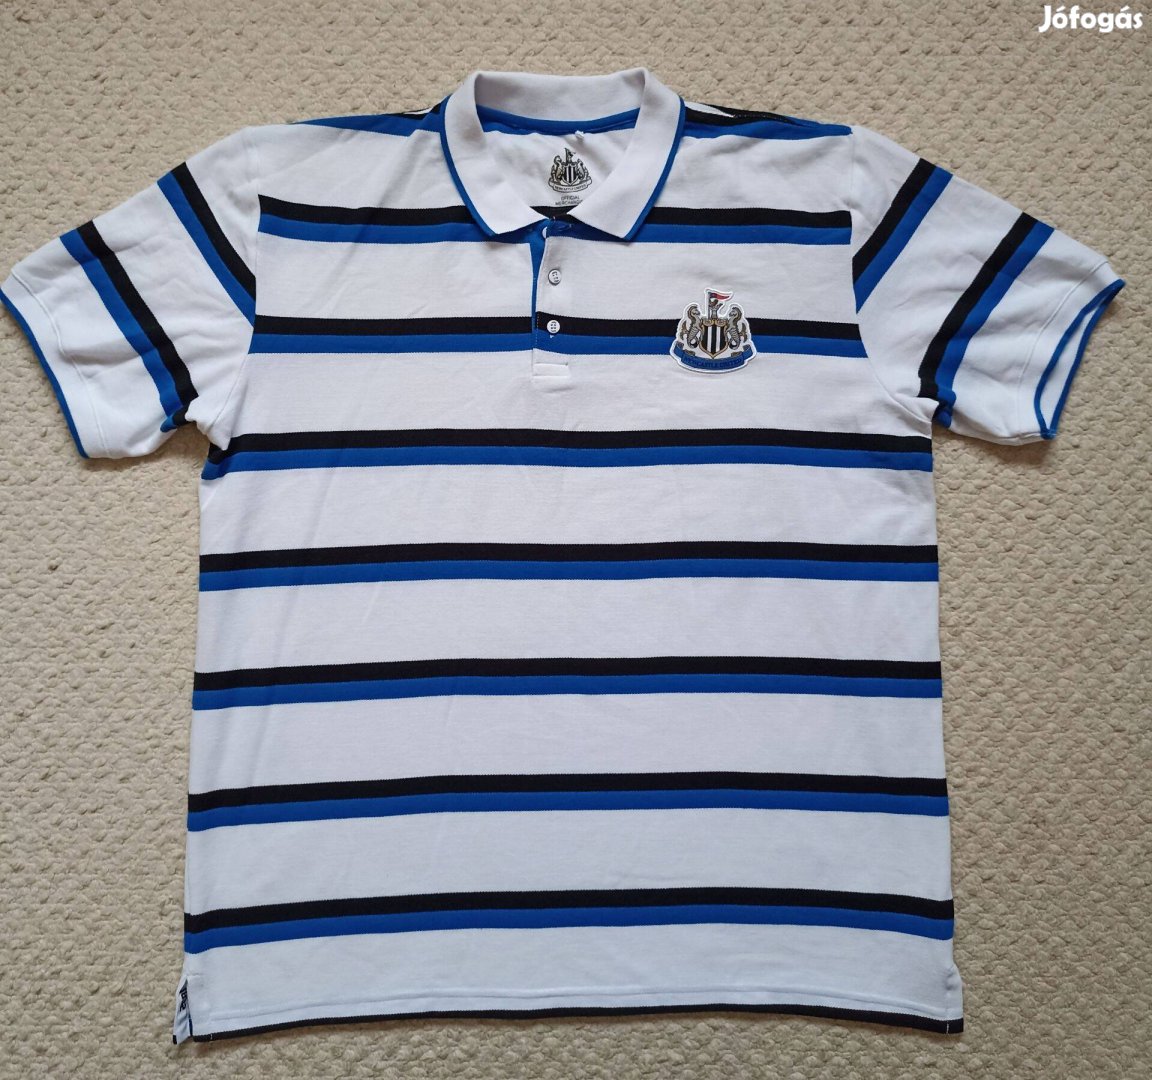 Newcastle United FC hivatalos szurkolói labdarúgó foci póló